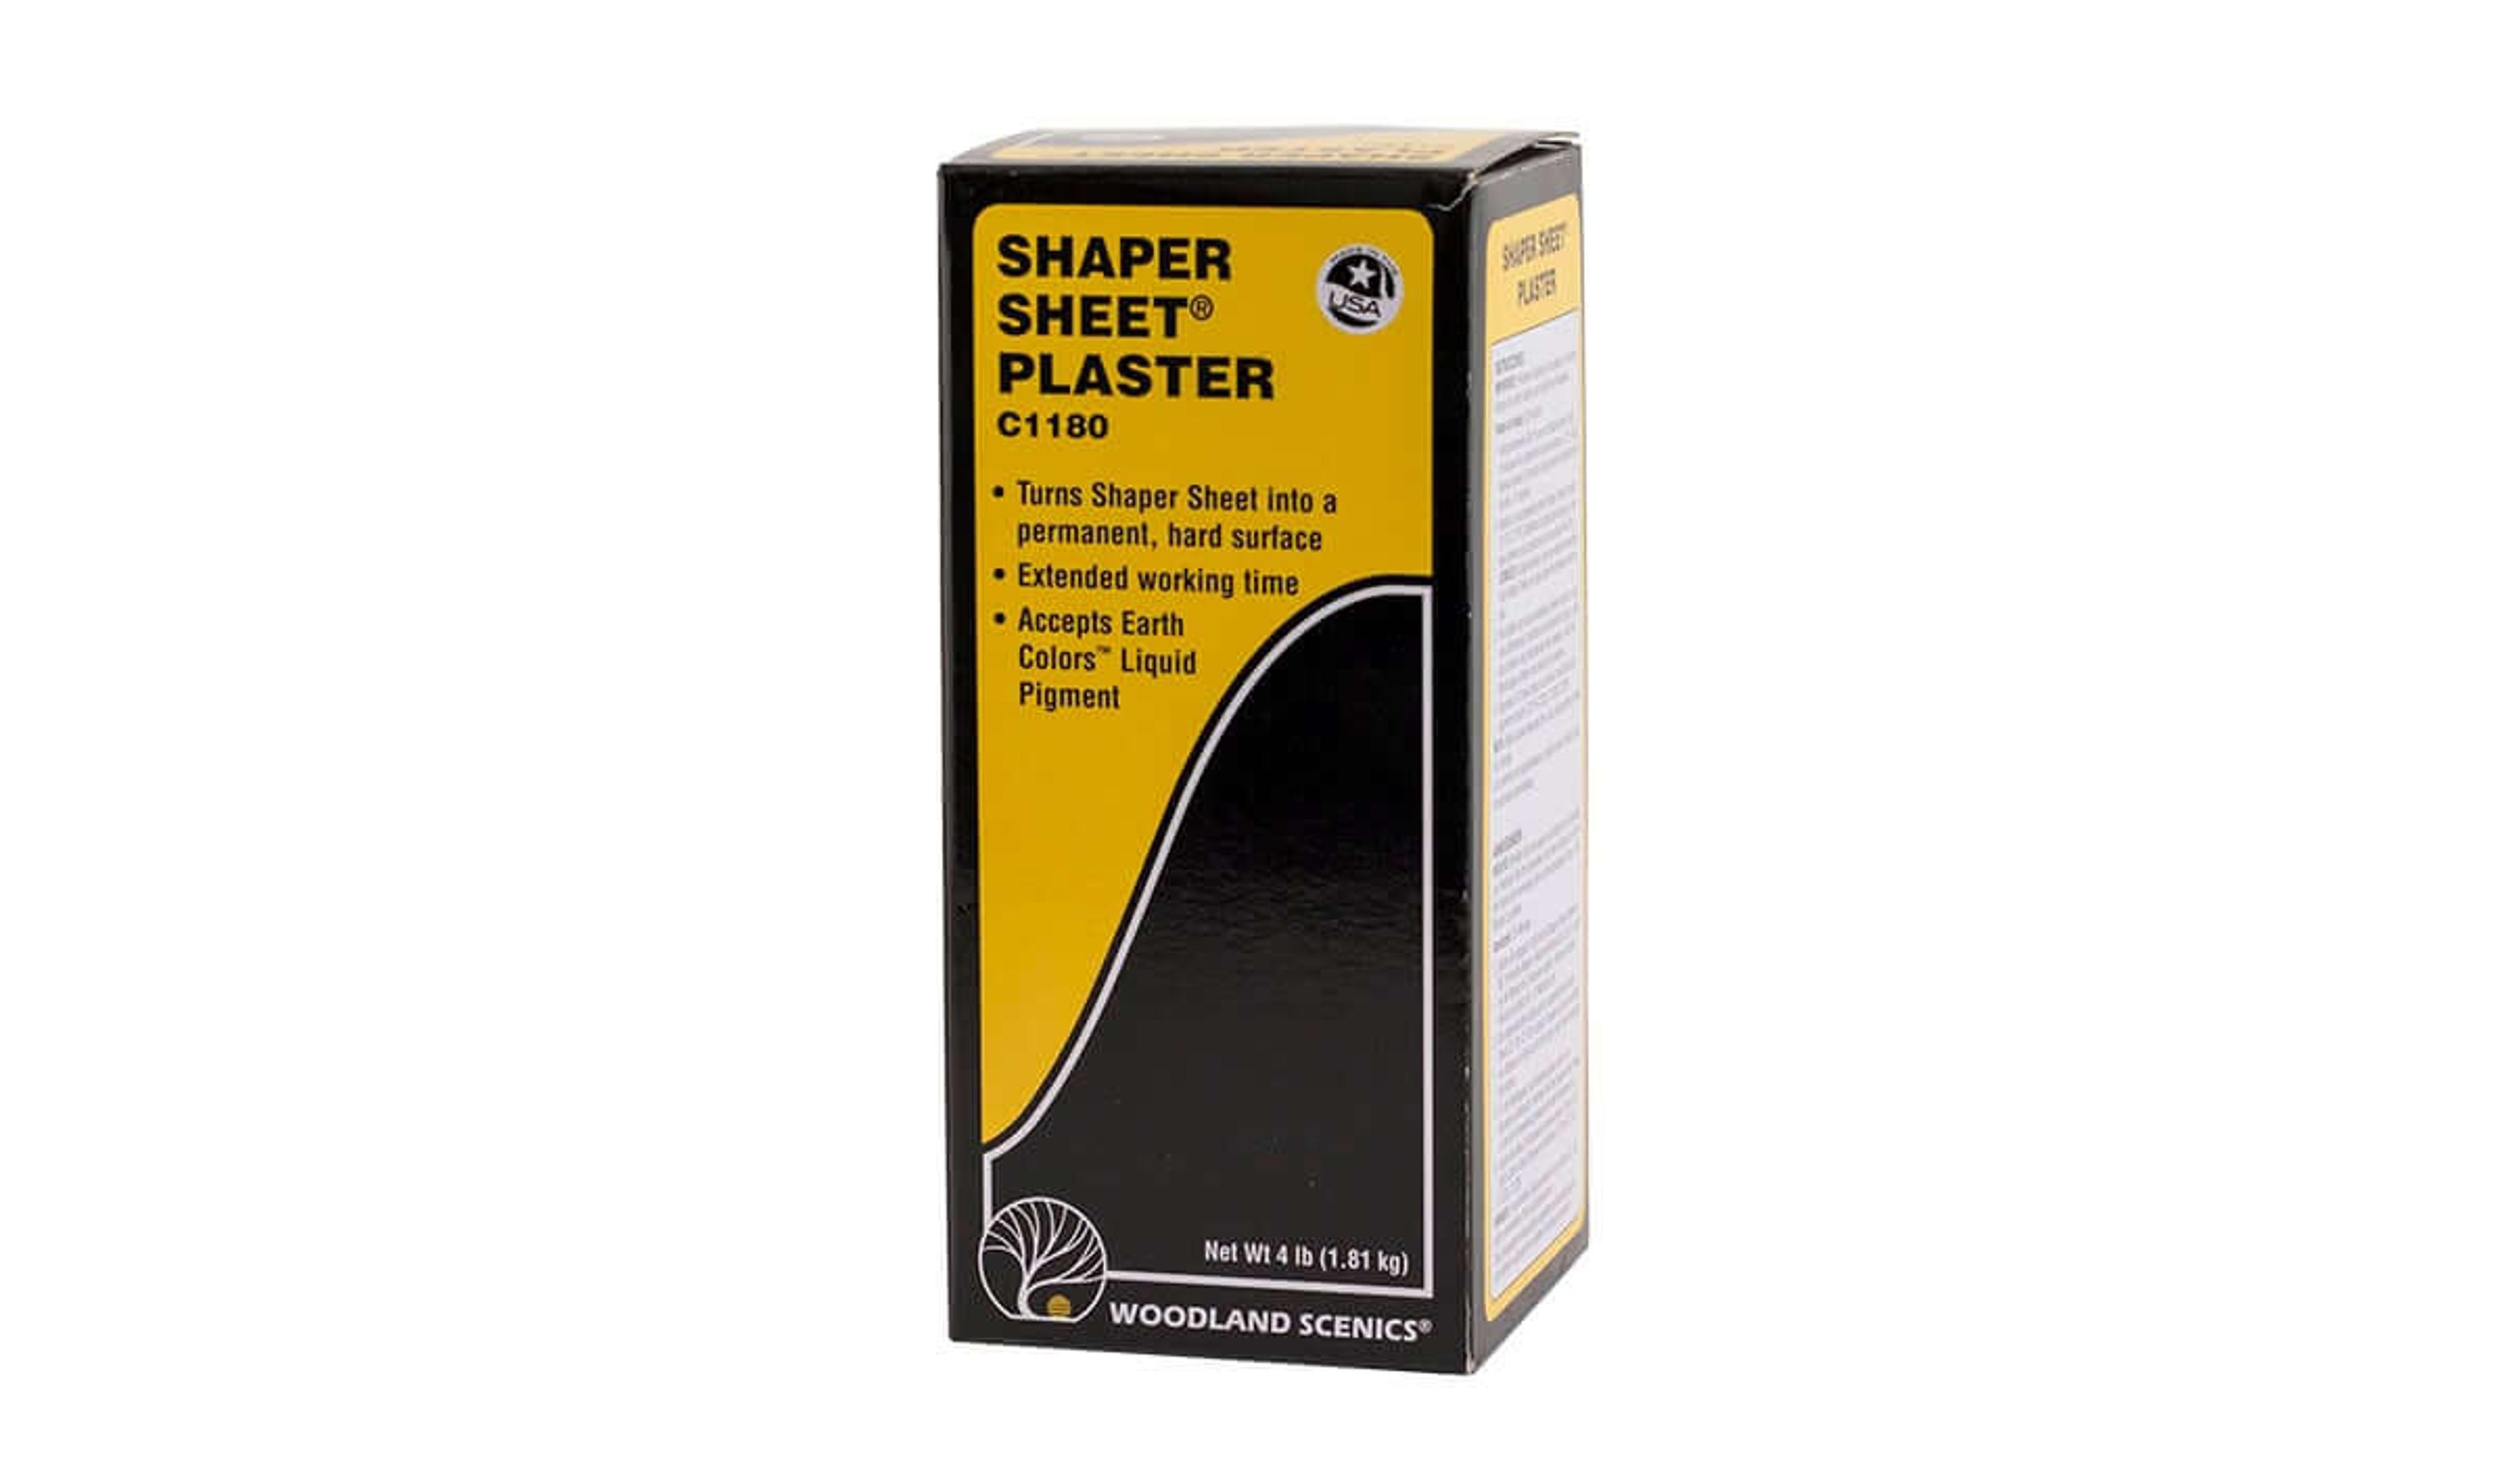 Shaper Sheet Plaster